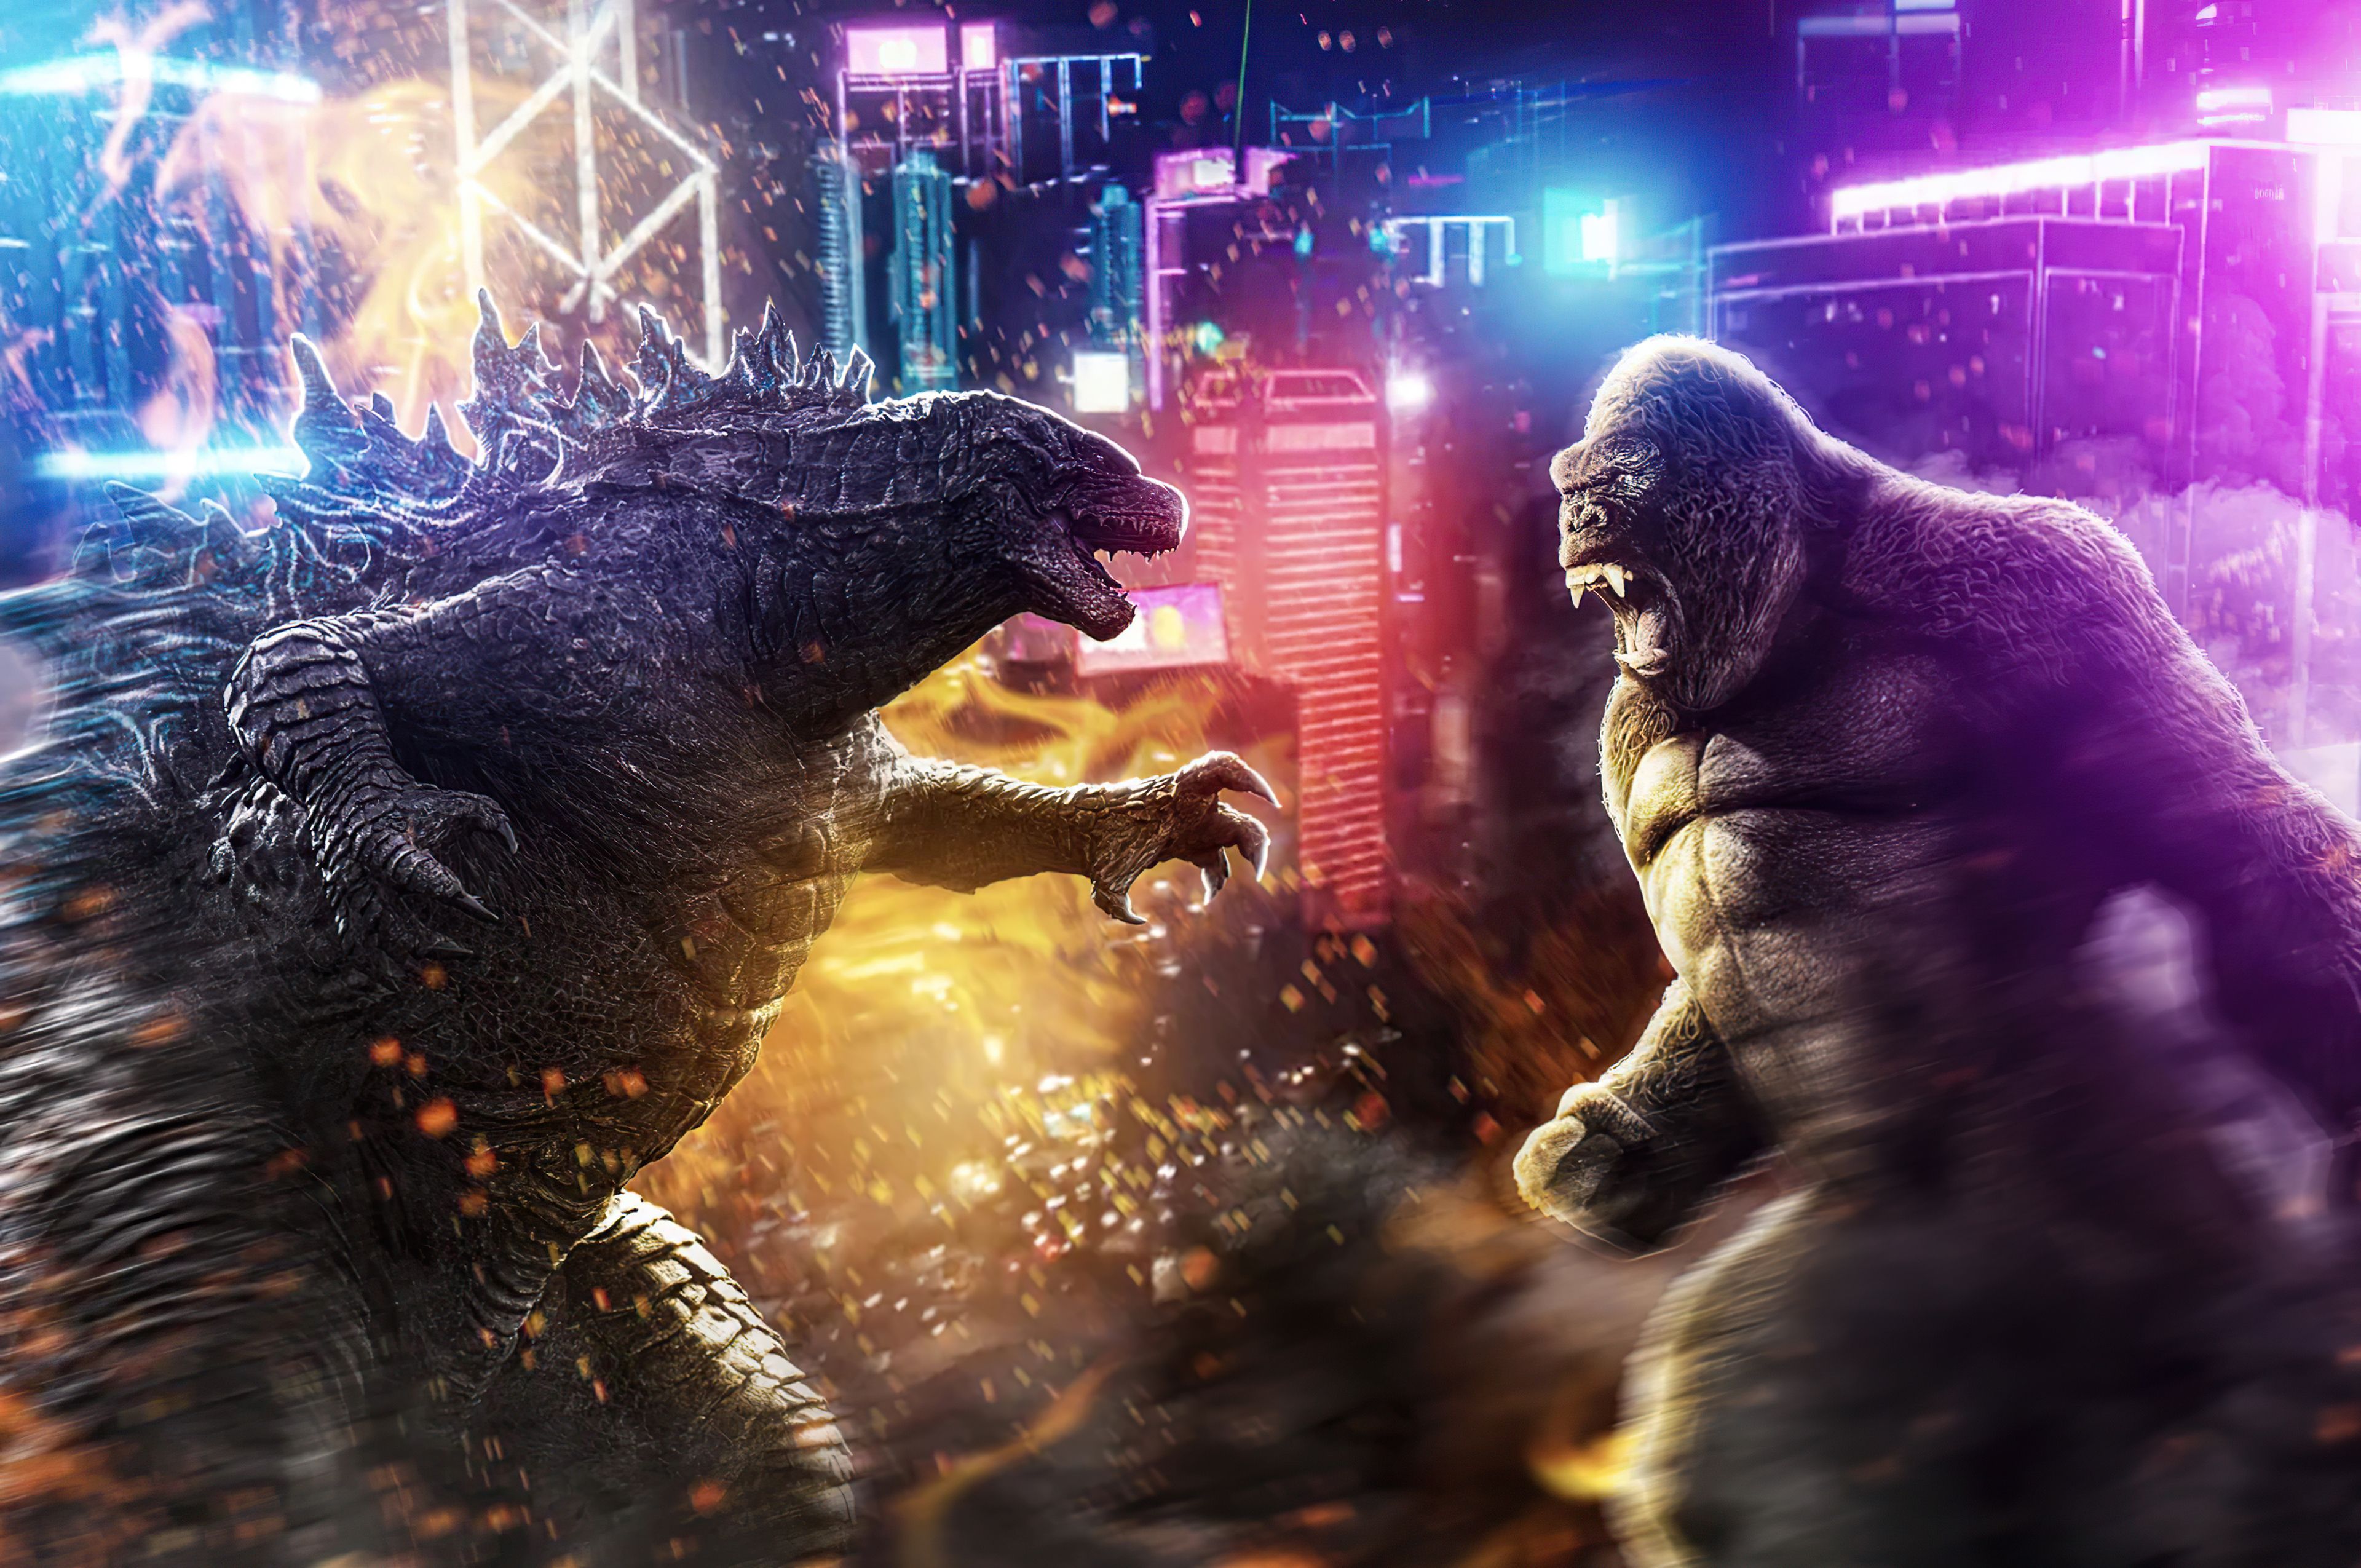 Godzilla vs Kong 4k Ultra HD Wallpaper. Background Imagex2550